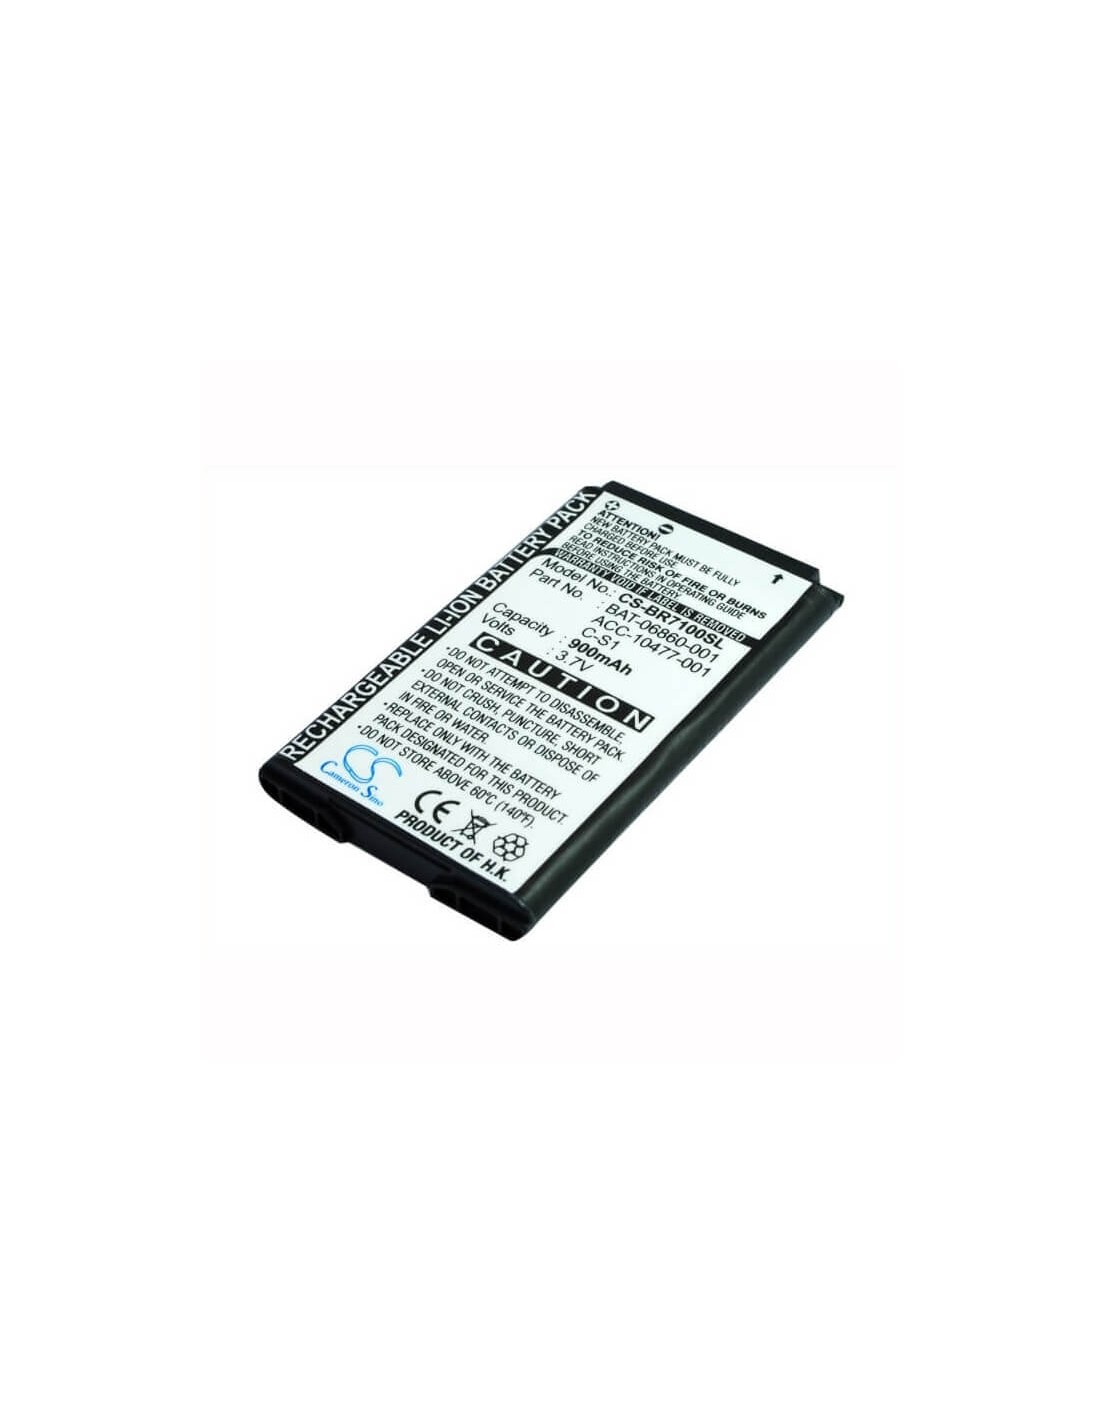 Battery for Blackberry 7100, 7100g, 7100i 3.7V, 900mAh - 3.33Wh